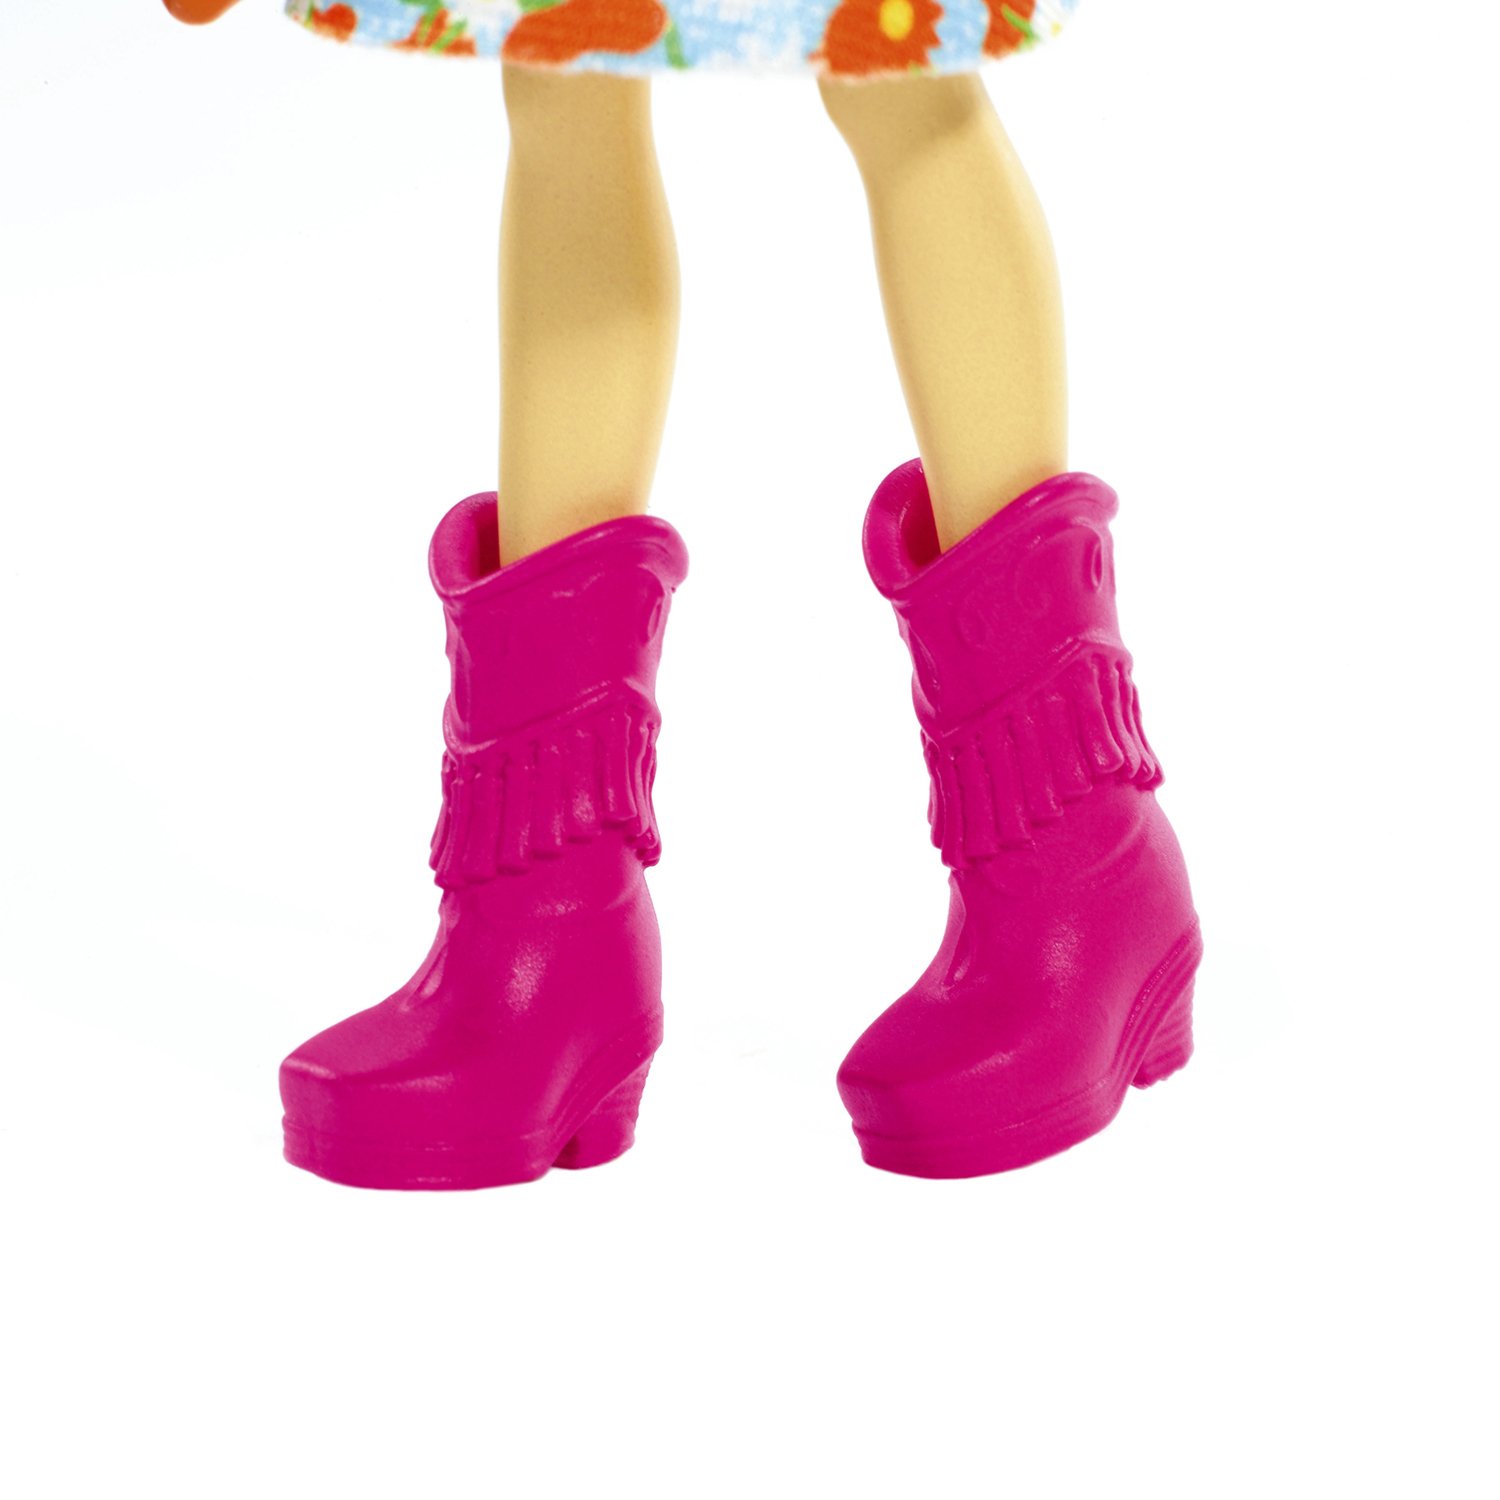 Кукла с питомцем Enchantimals FXM77 Кейли Коровка и Кардл, 15 см